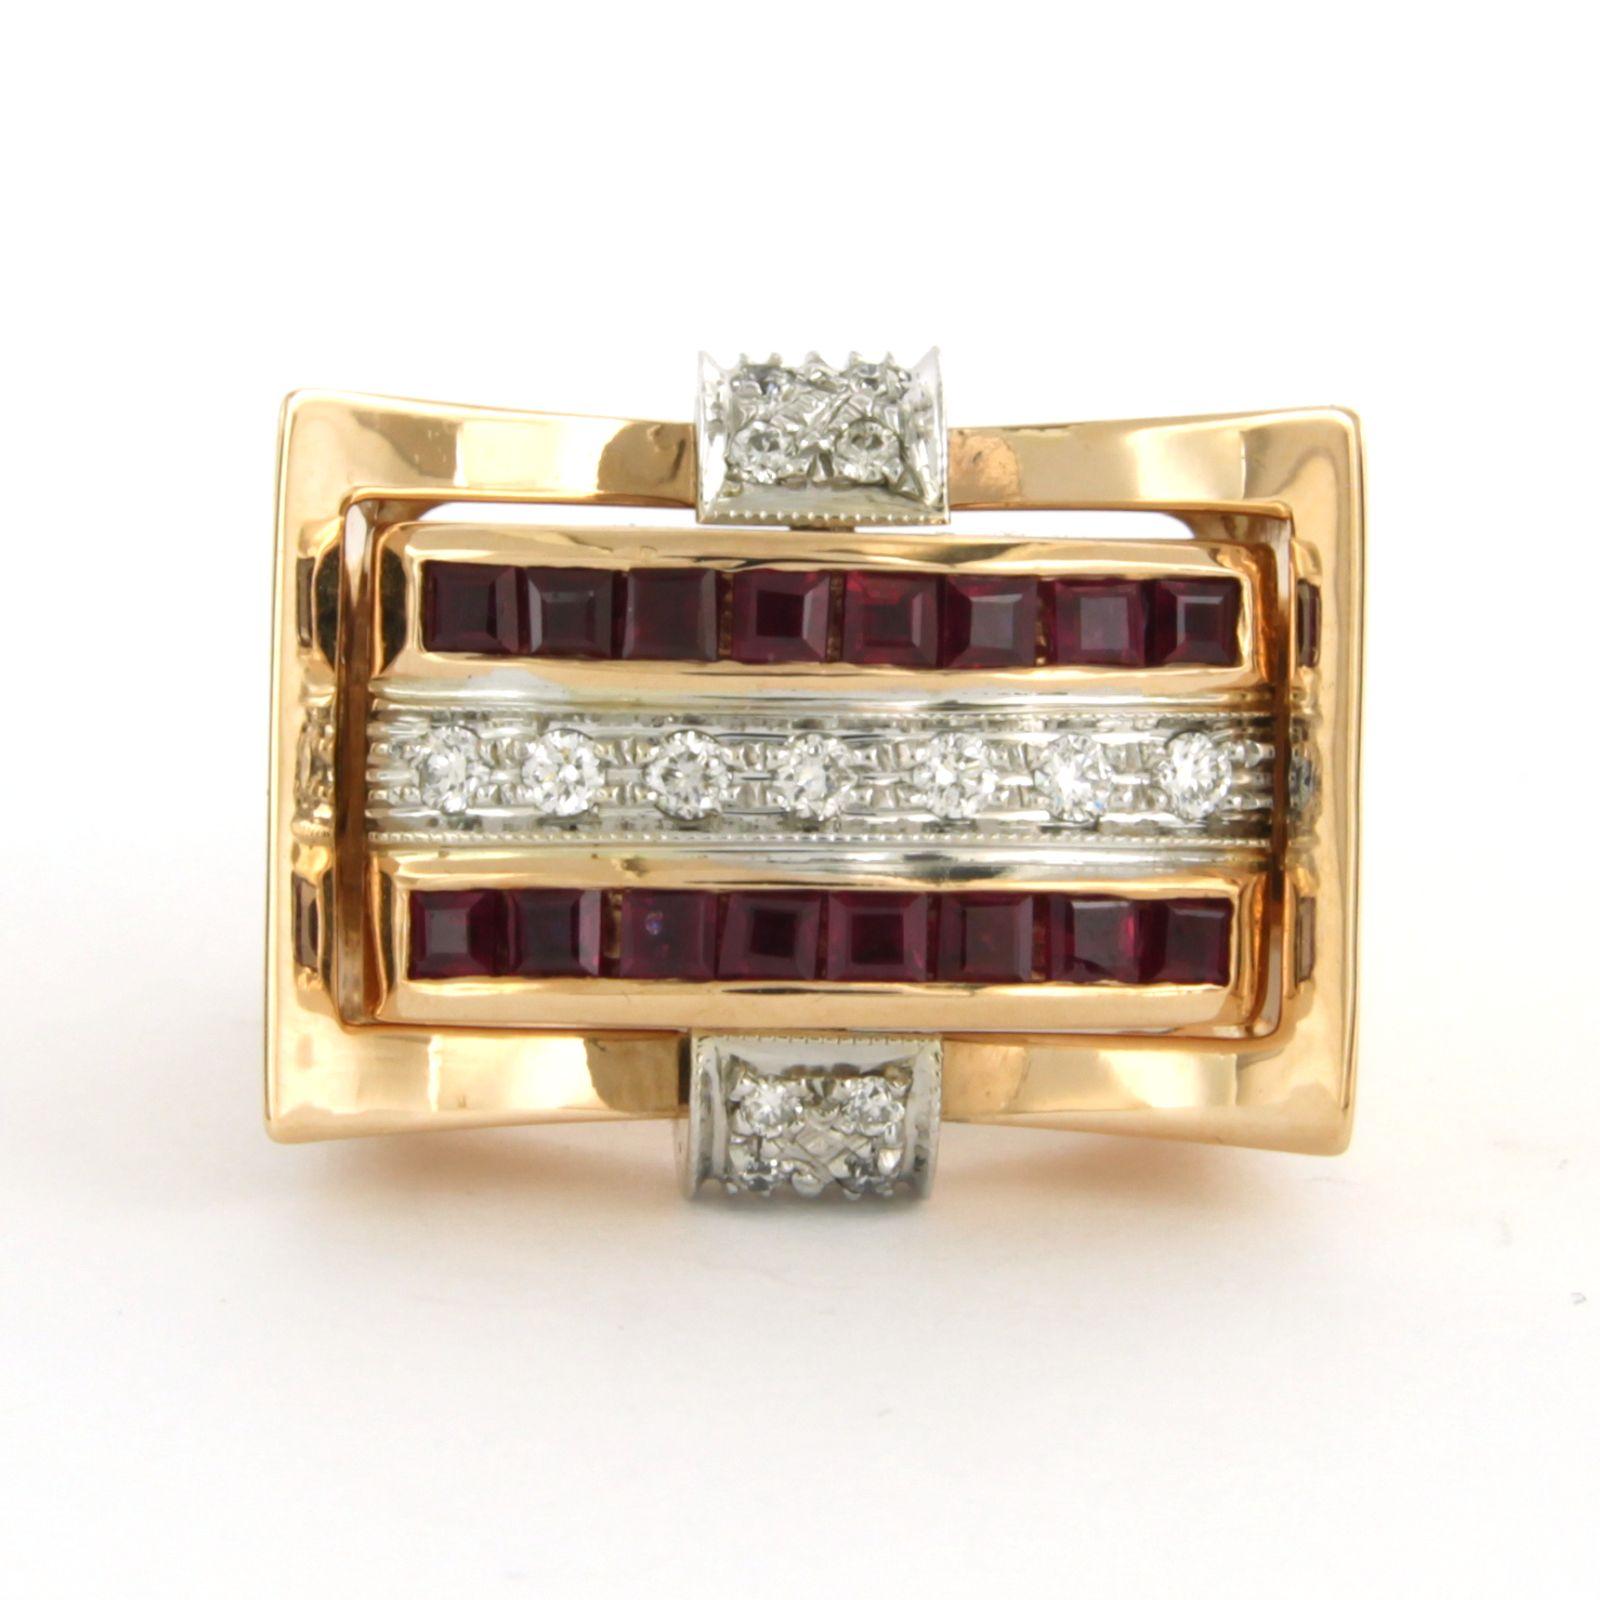 RETRO Ring aus 18 Karat zweifarbigem Gold mit Rubin, Saphir und Diamanten besetzt (Retro)